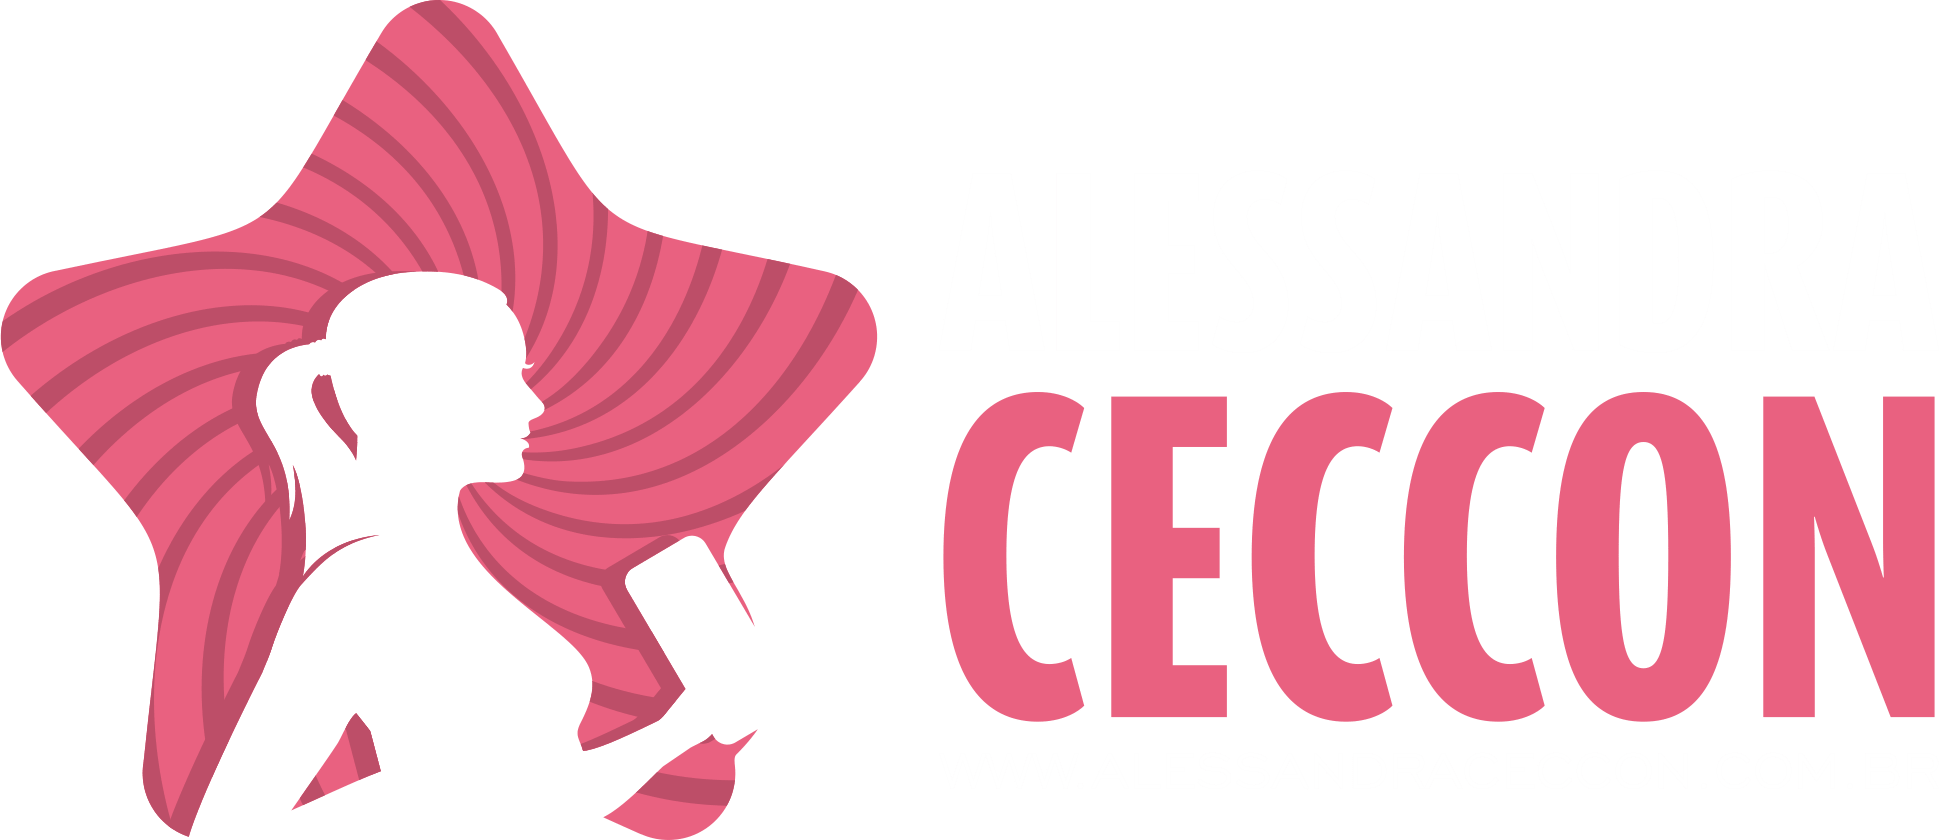 Alessandra Ceccon